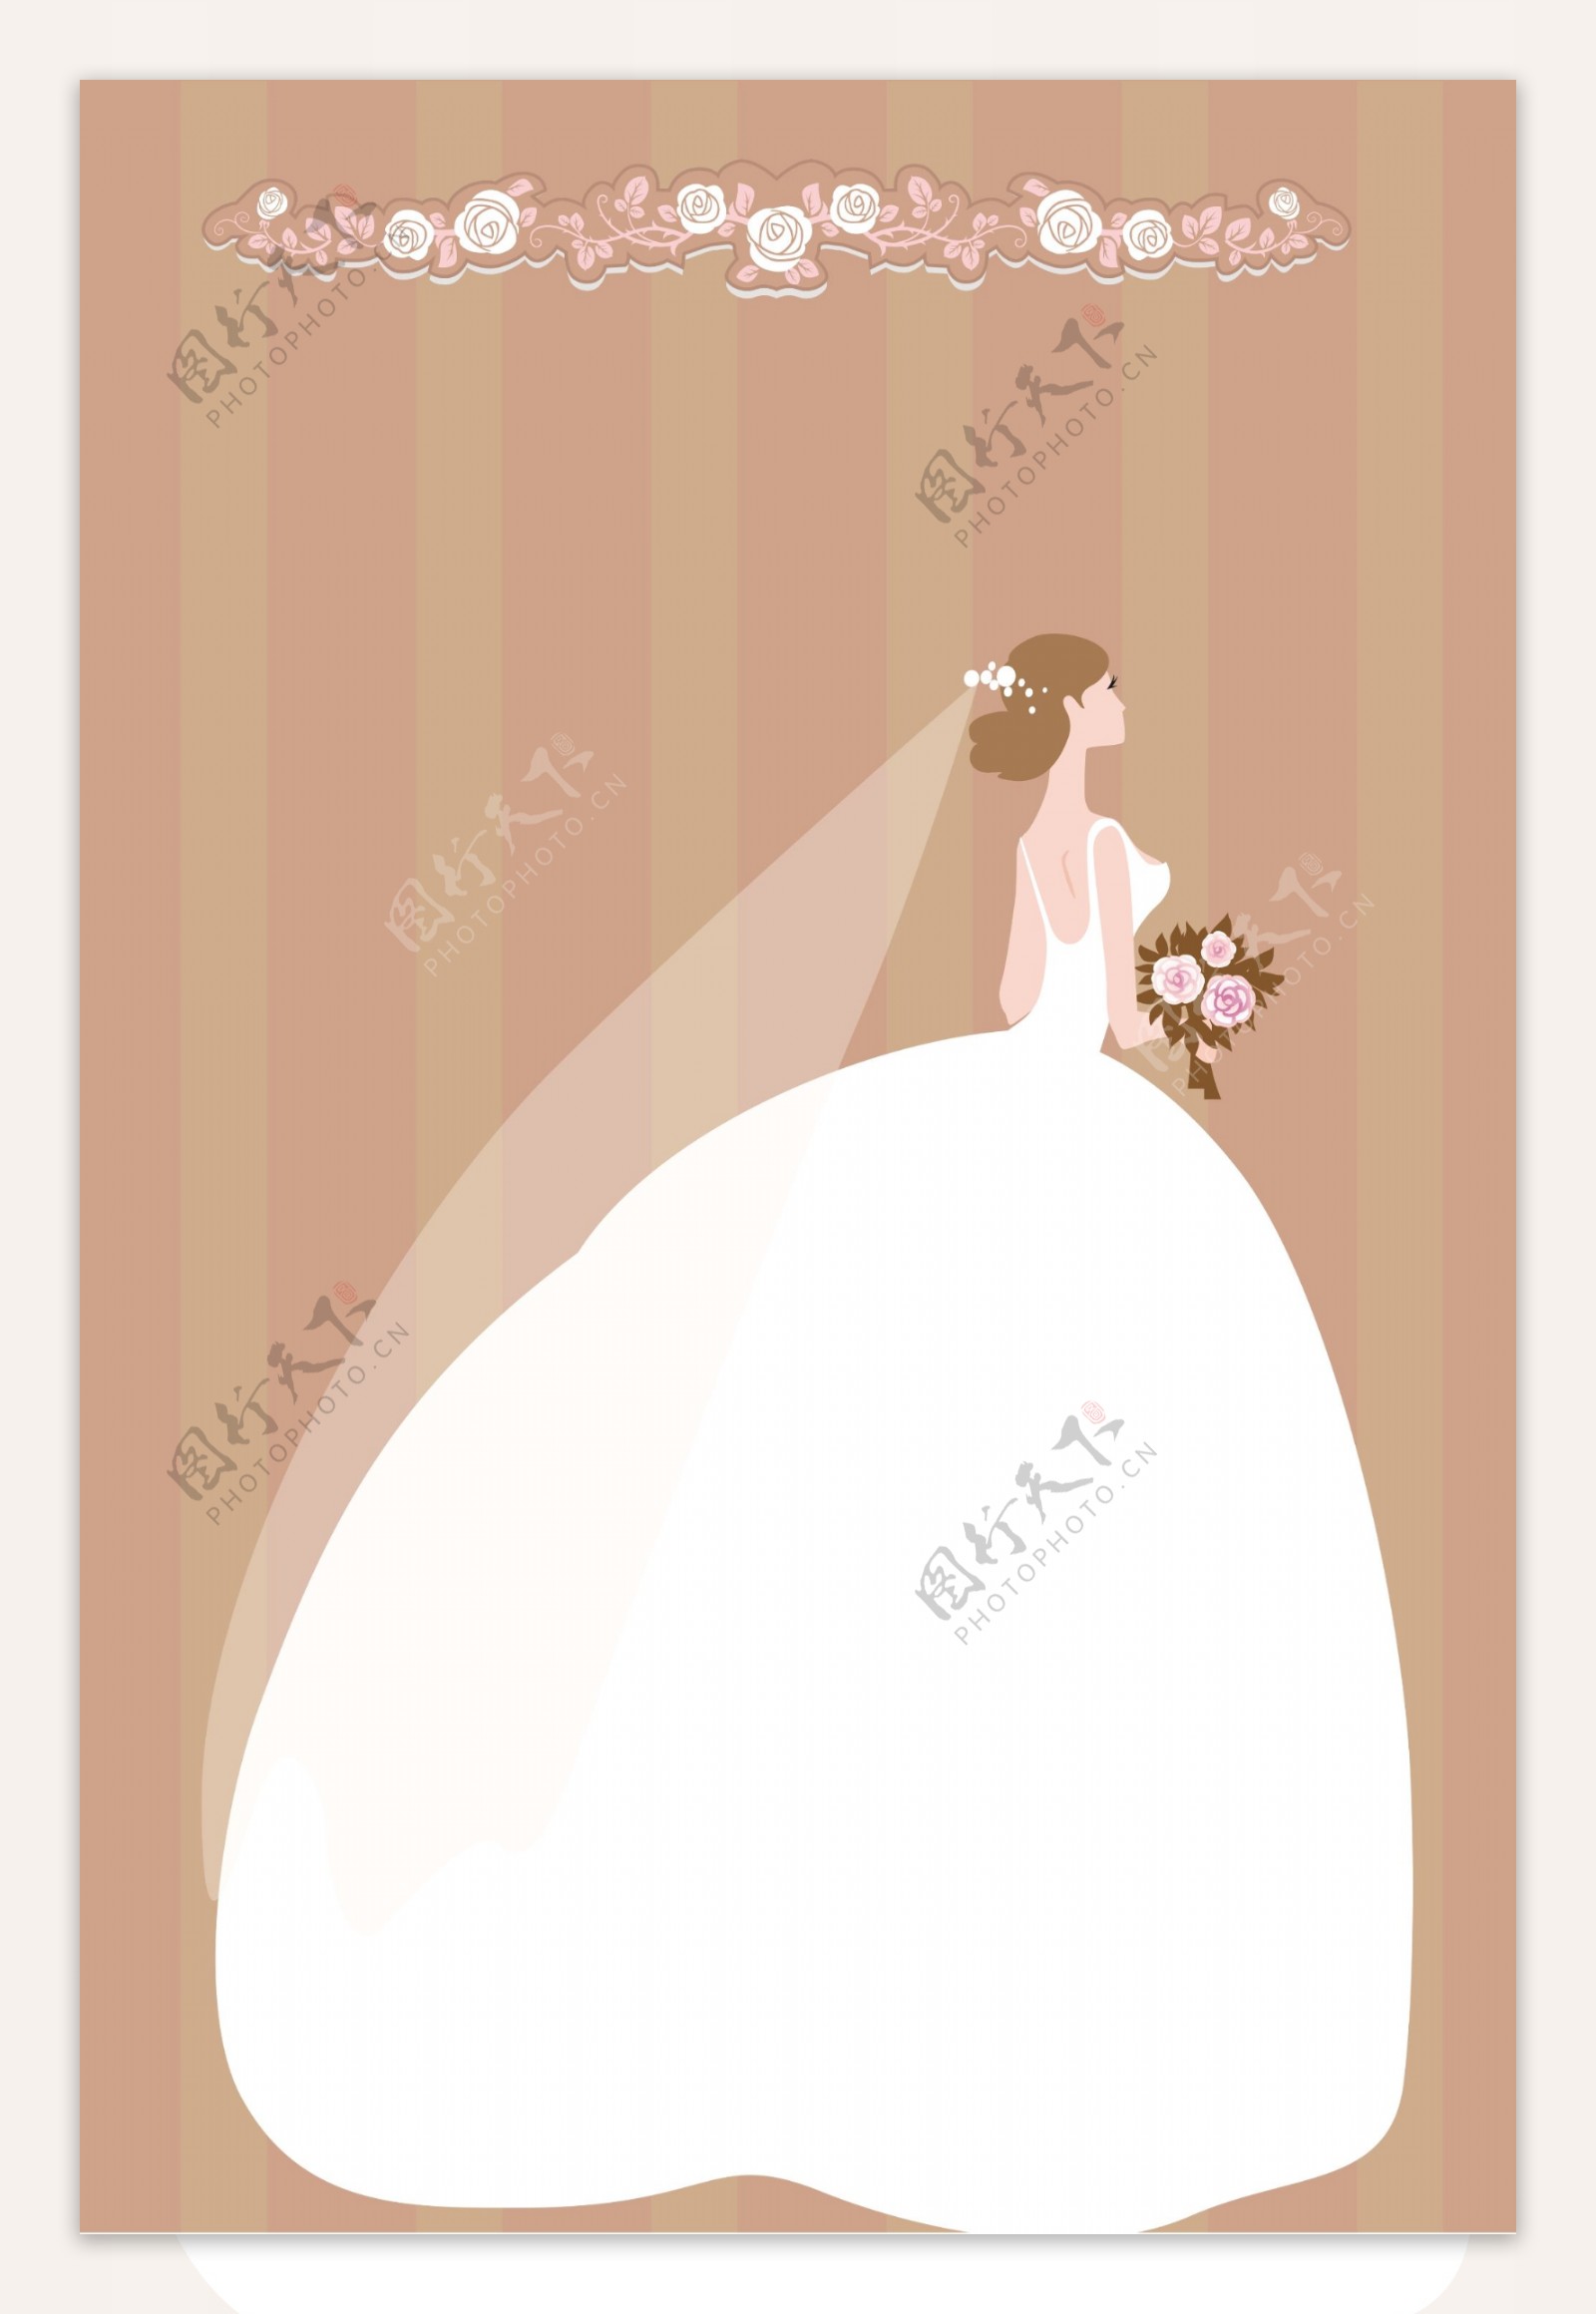 婚礼婚纱结婚卡通海报设计PSD模板